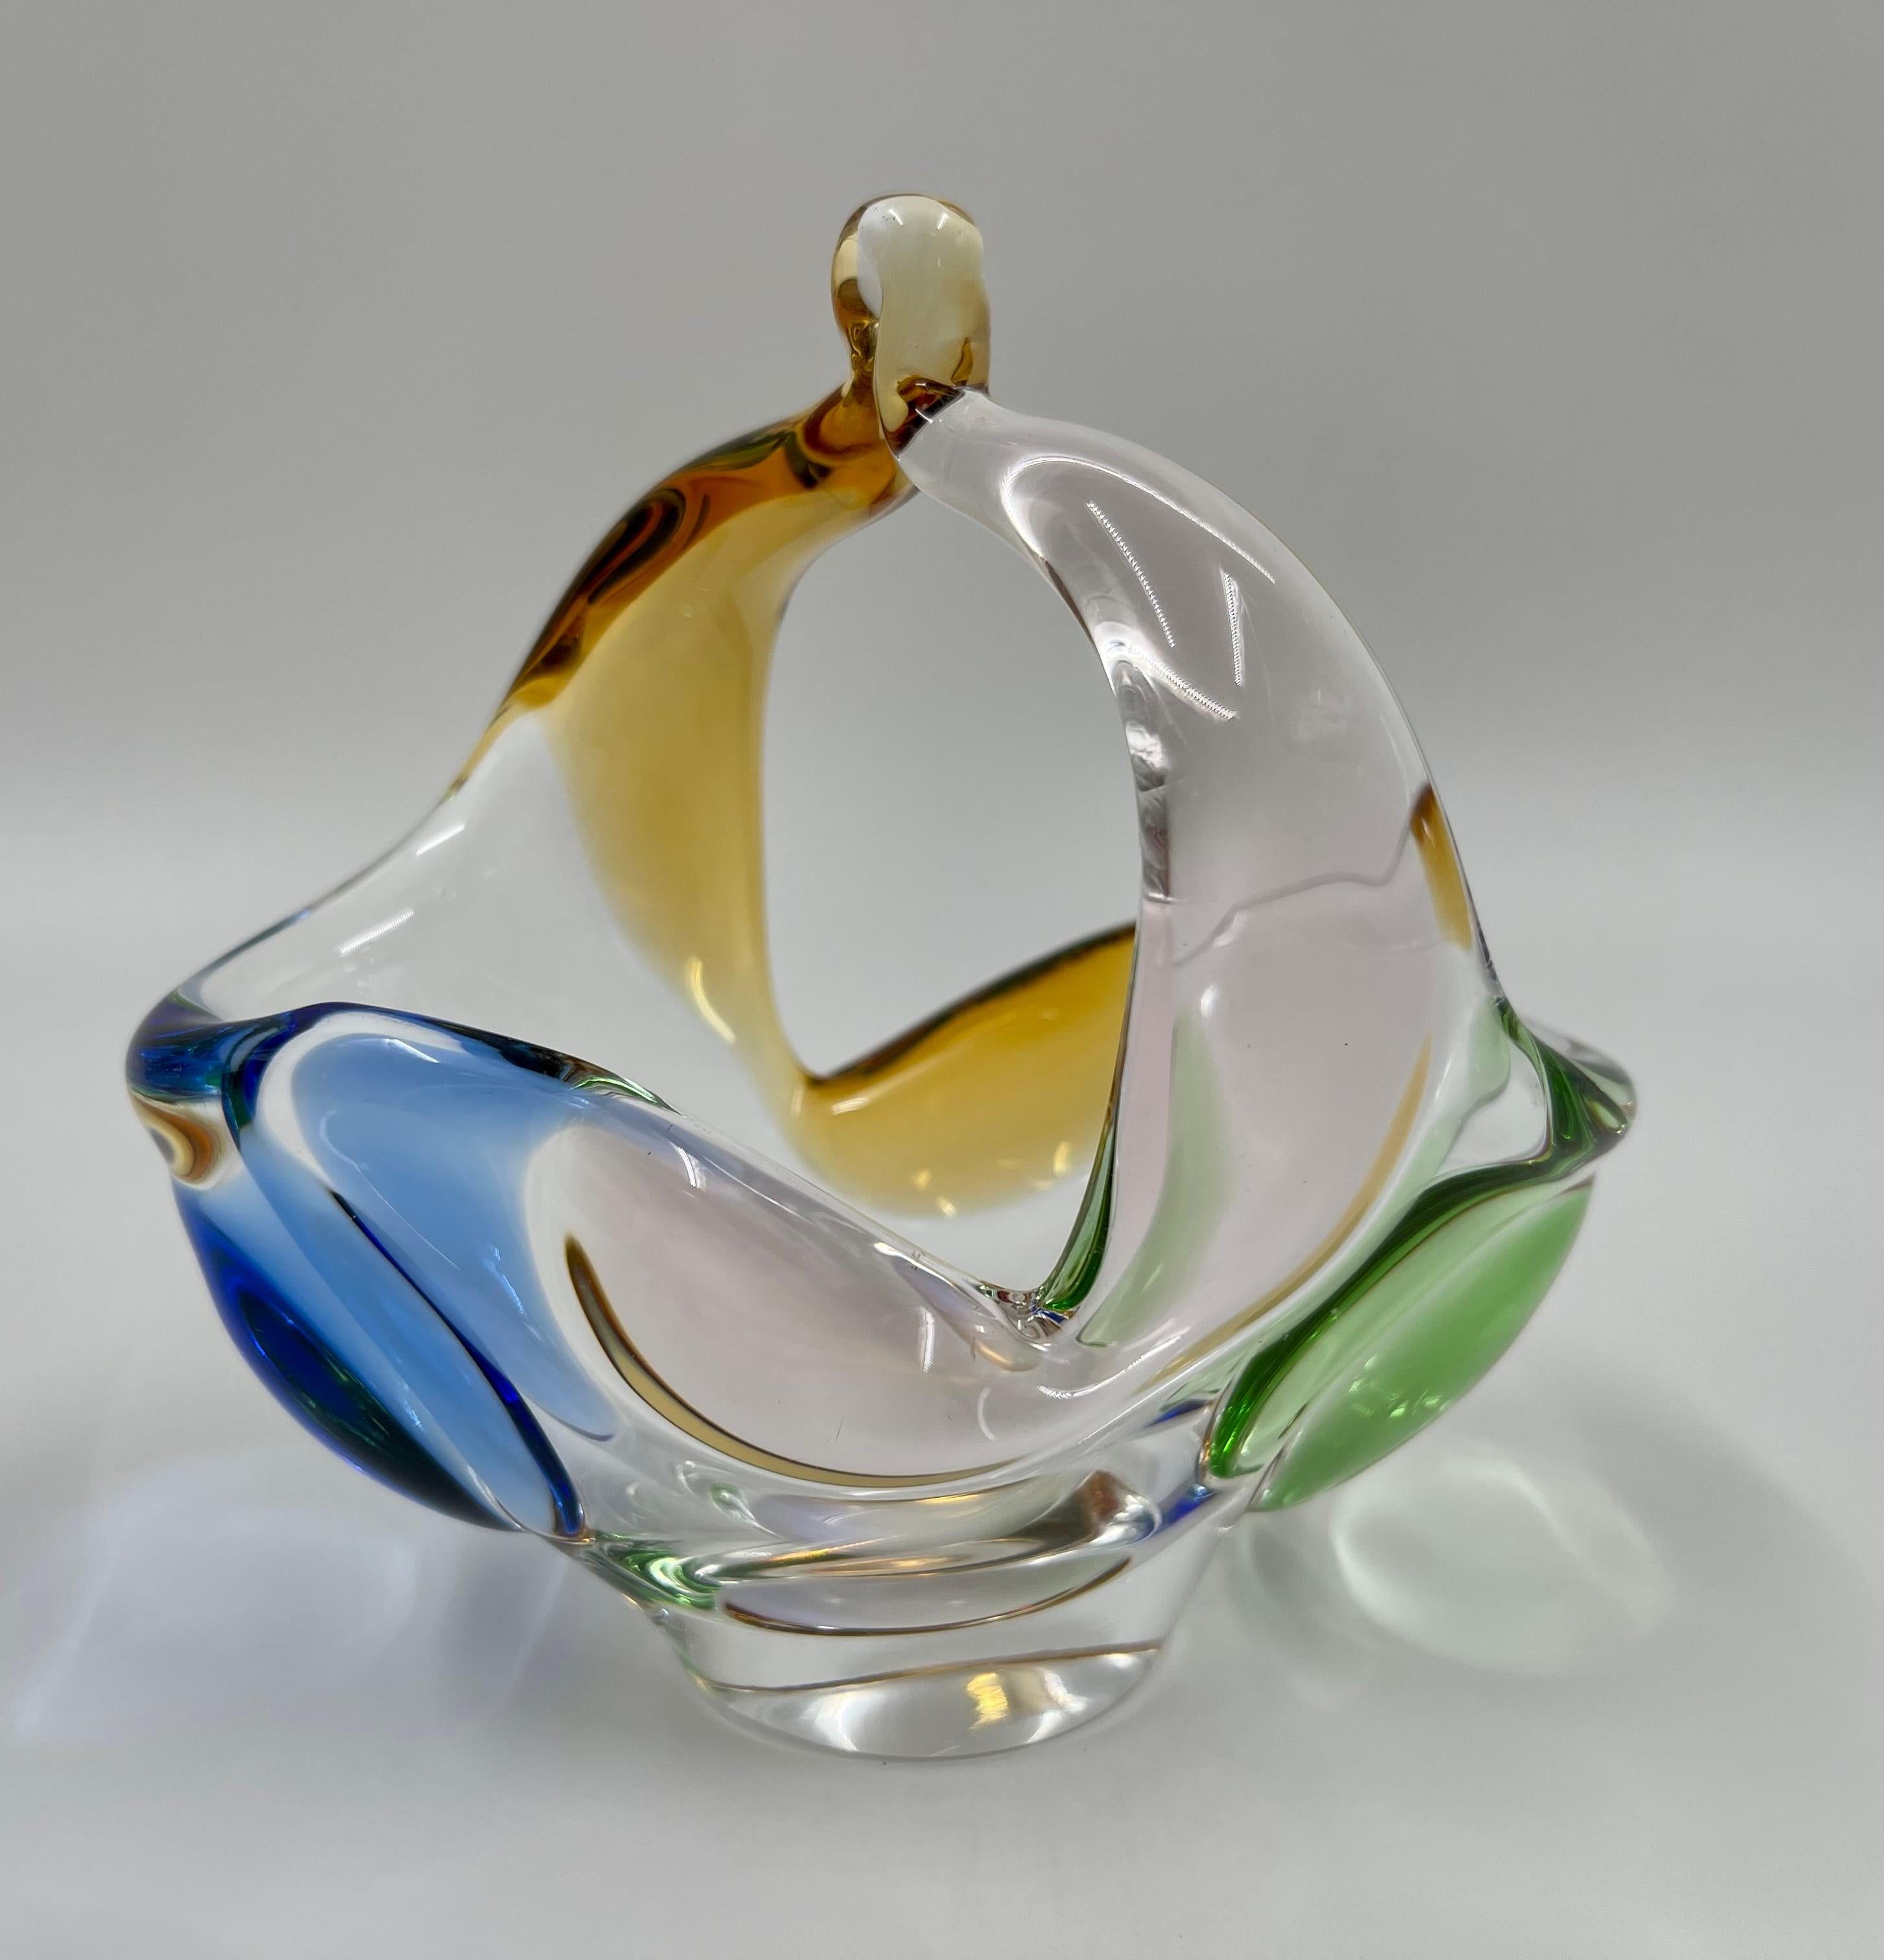 Dies ist ein wunderschöner Glaskorb aus der Mitte des Jahrhunderts, entworfen von Frantisek Zemek und hergestellt von der Glashütte Mstisov in der Tschechoslowakei in den 1950er Jahren. Der Korb gehört zur Collection'S Rhapsody und ist aus farbigem